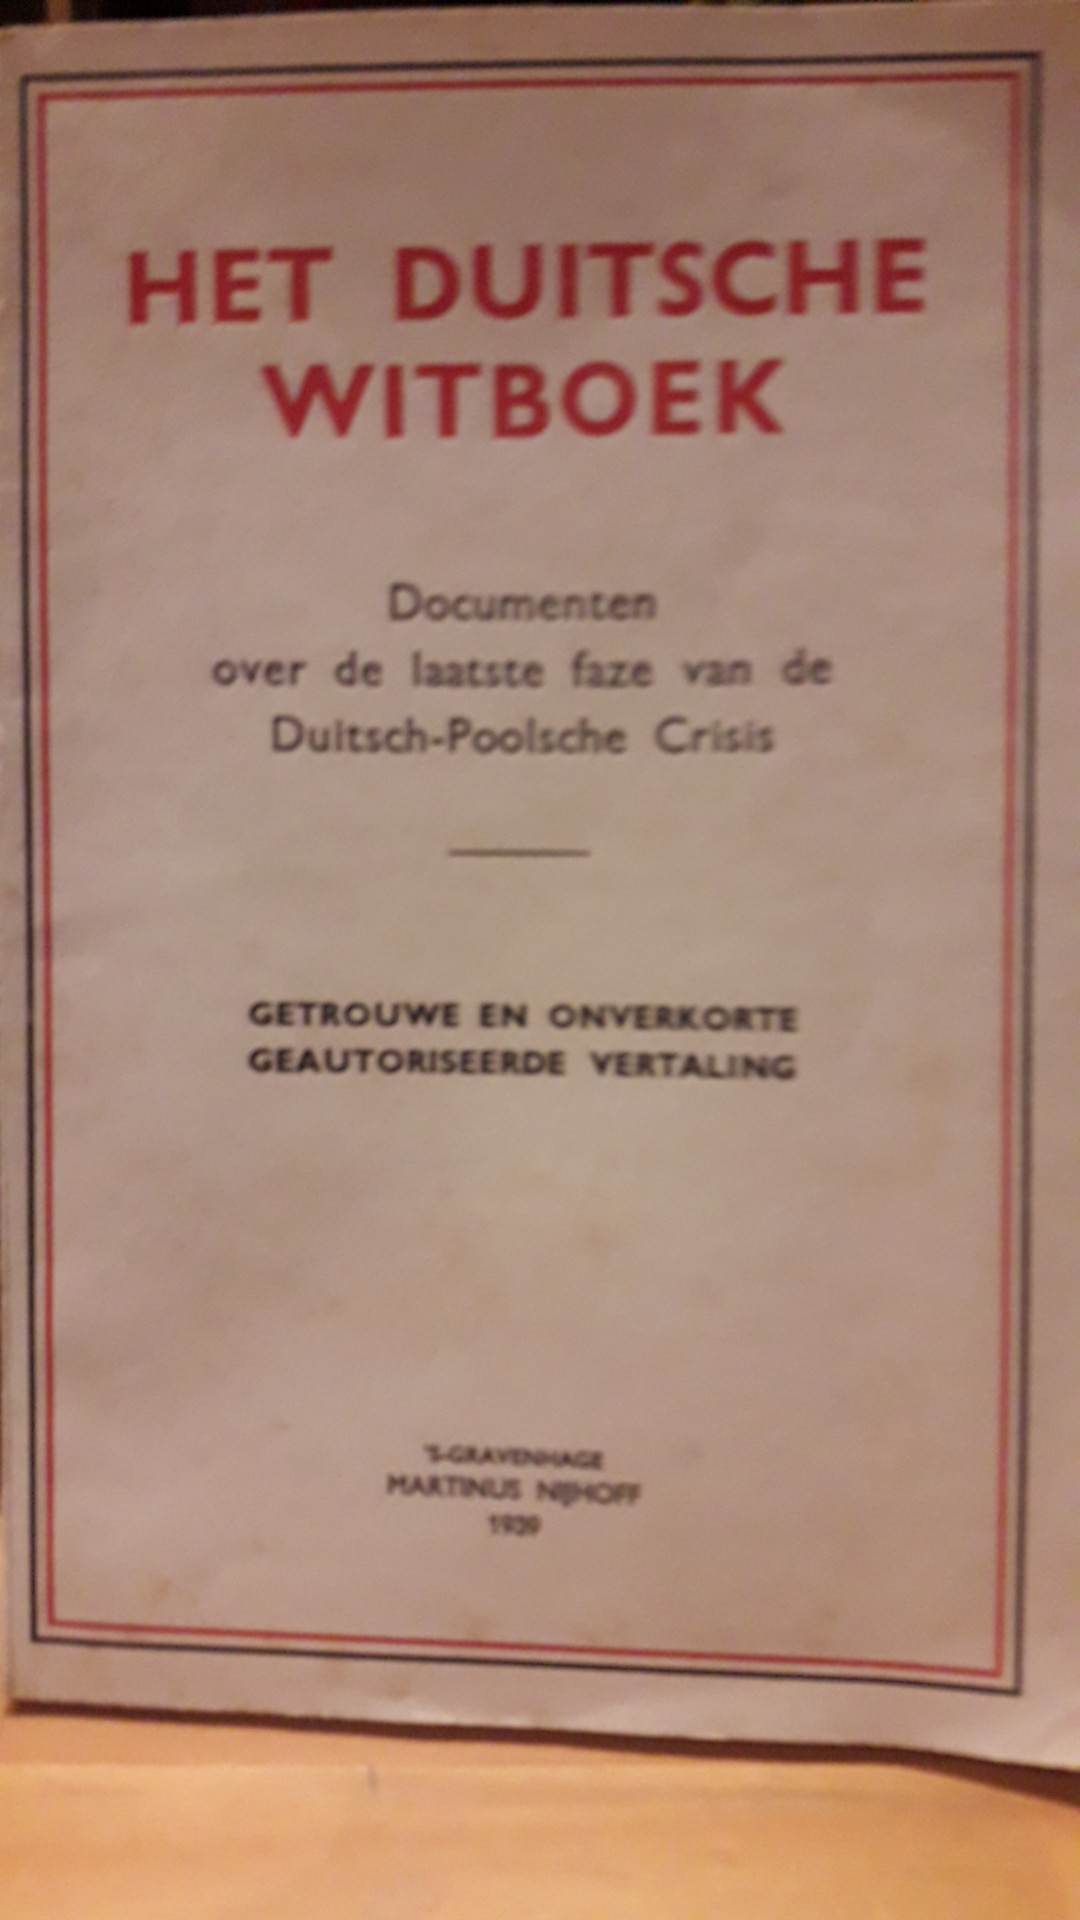 Het Duitsche witboek over de Duitsch - Poolse crisis uitgave 1939 / 78 blz